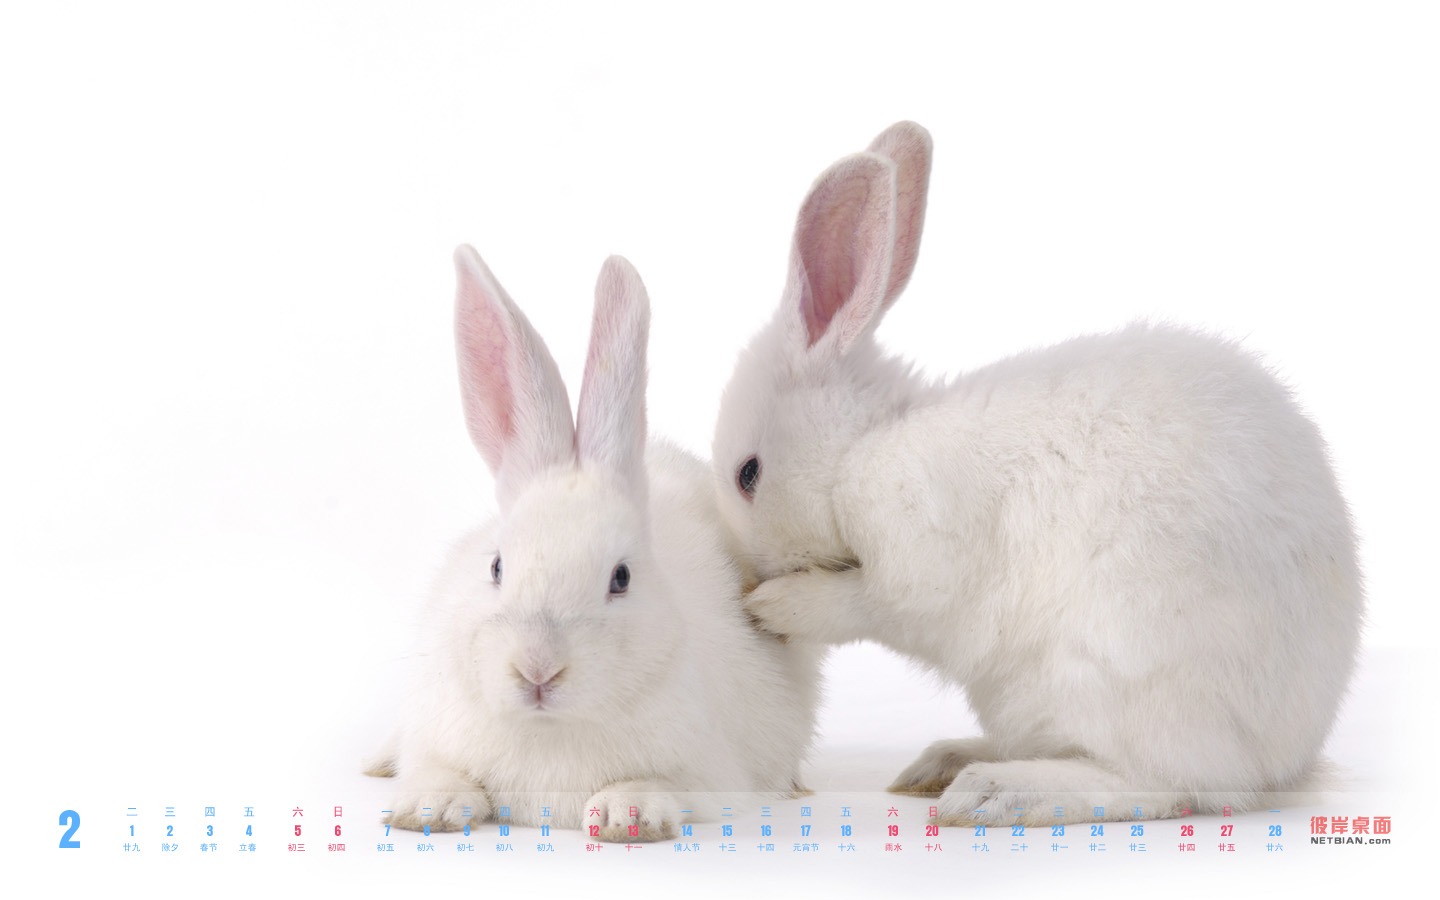 Cute little rabbit February 2011 calendar desktop wallpaper